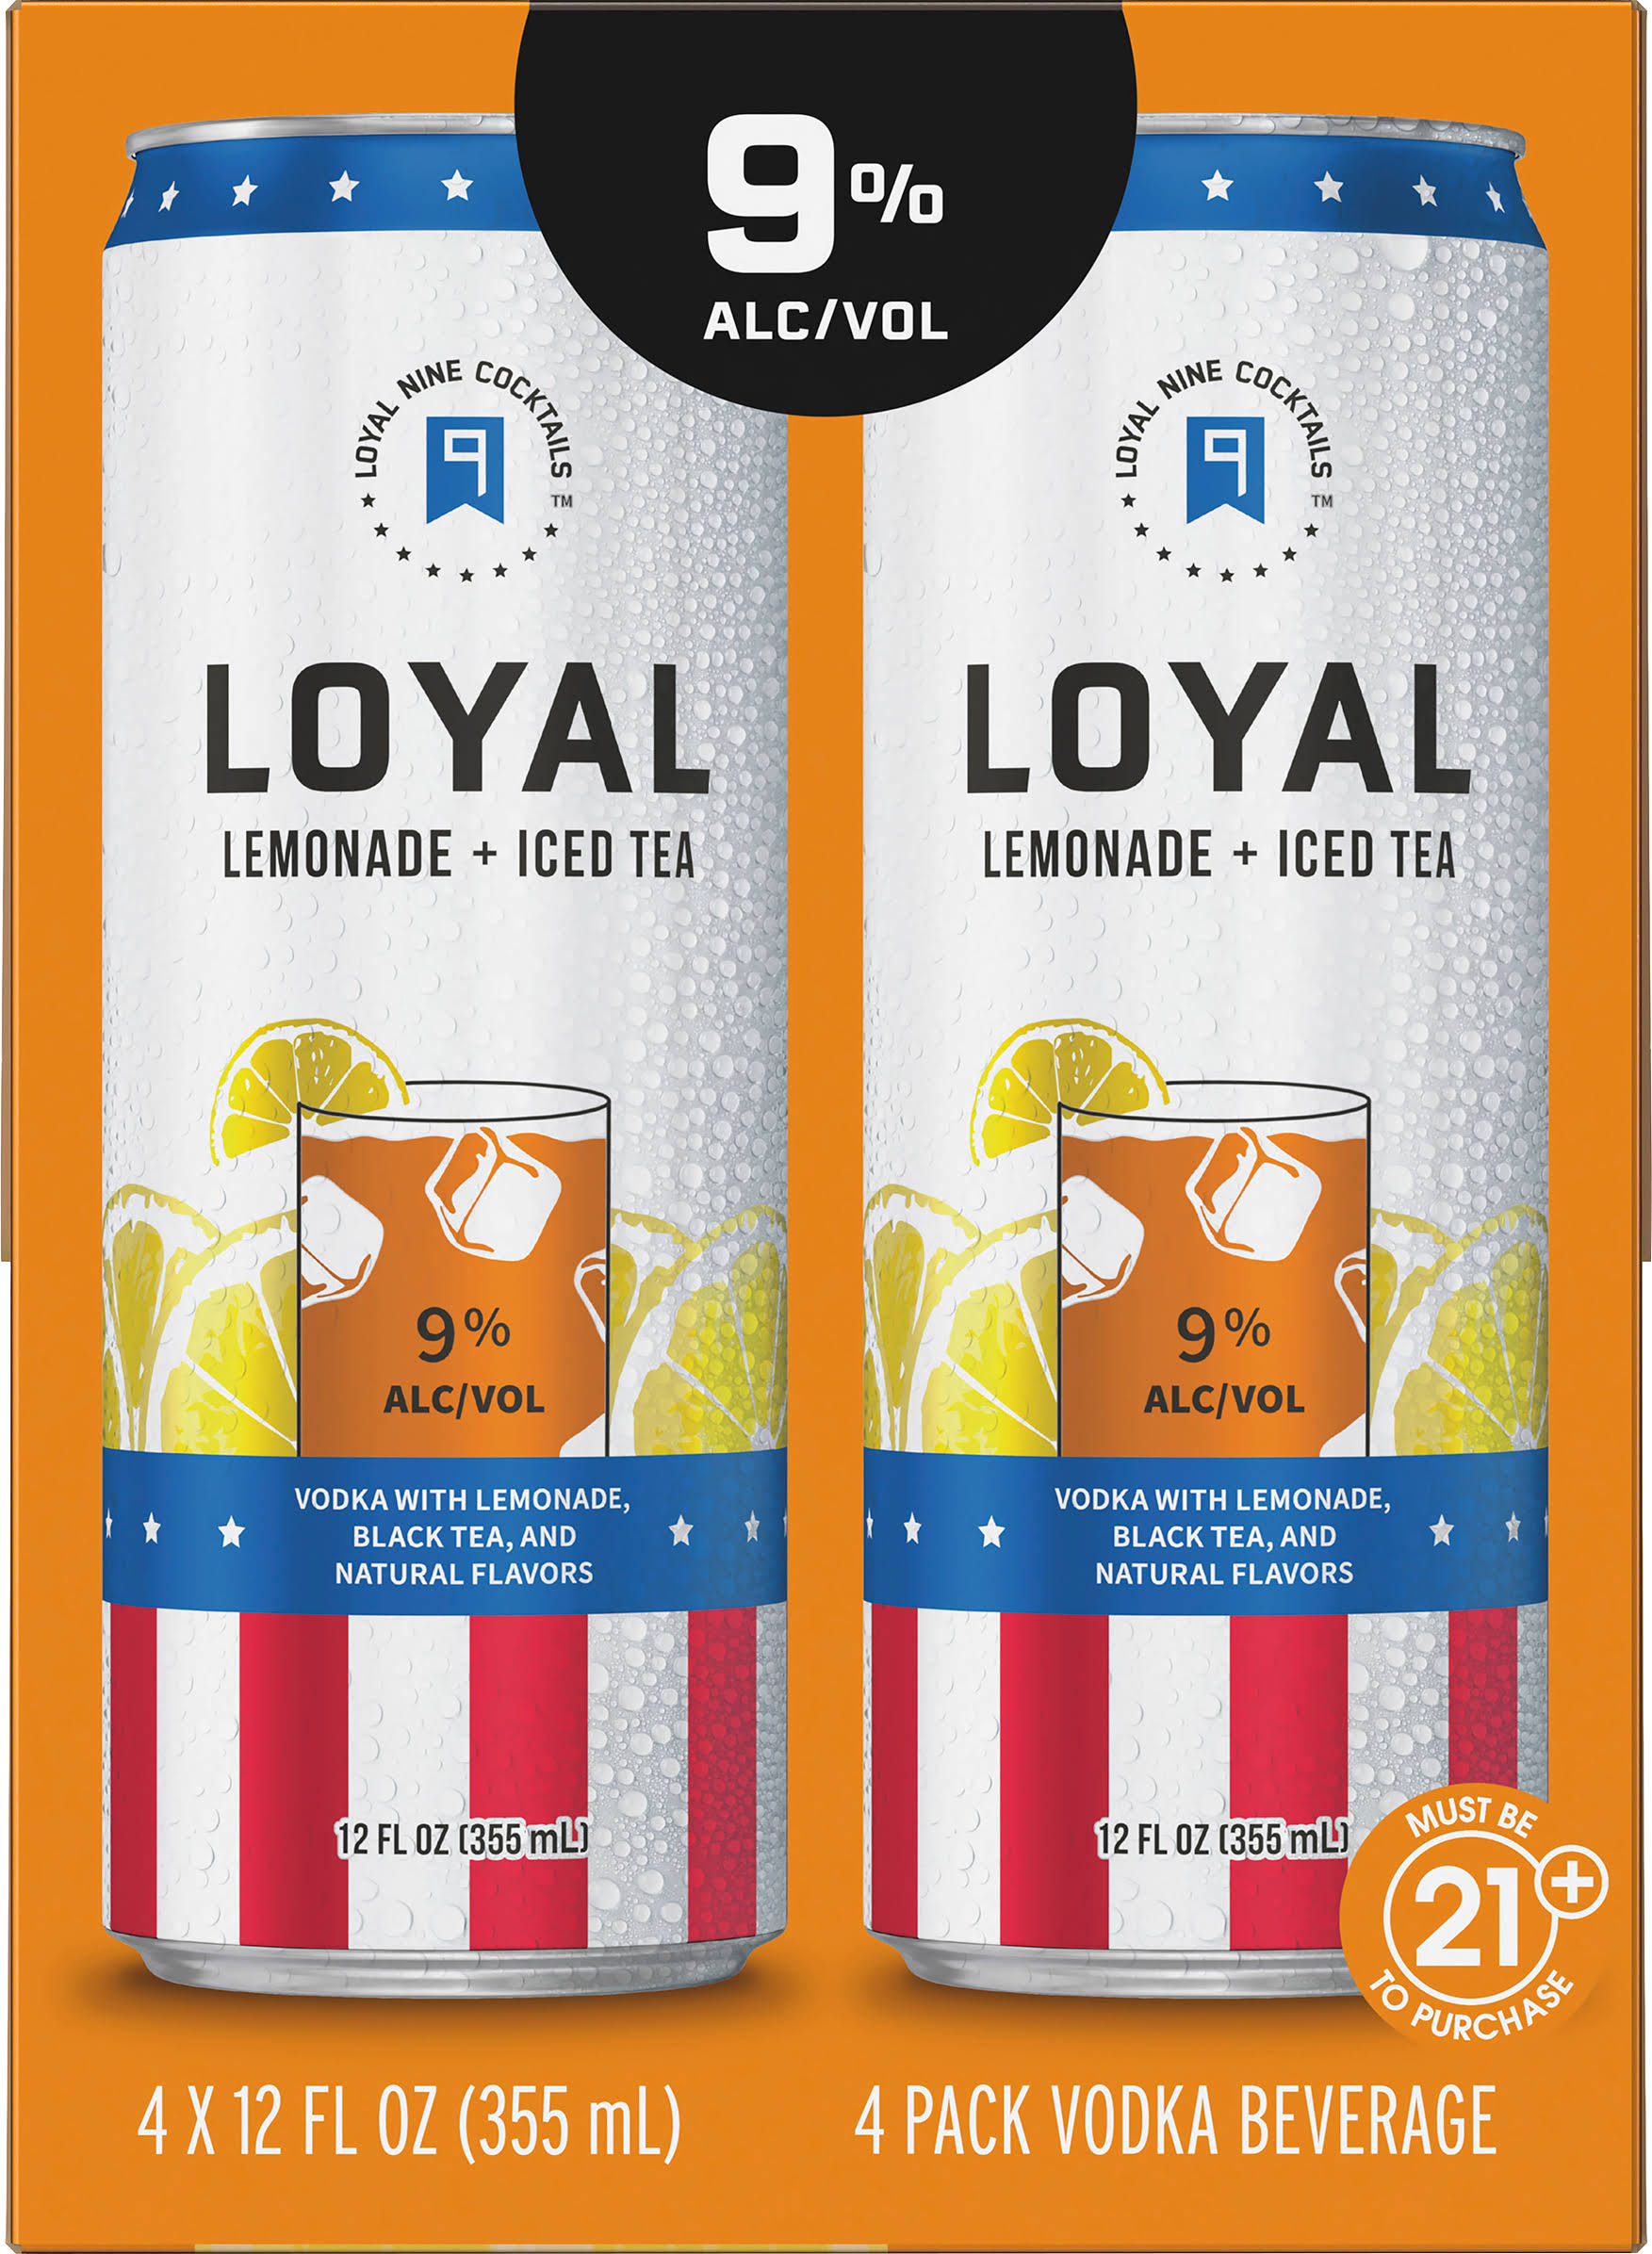 Loyal Vodka, Lemonade + Iced Tea, 4 Pack - 4 pack, 12 fl oz cans